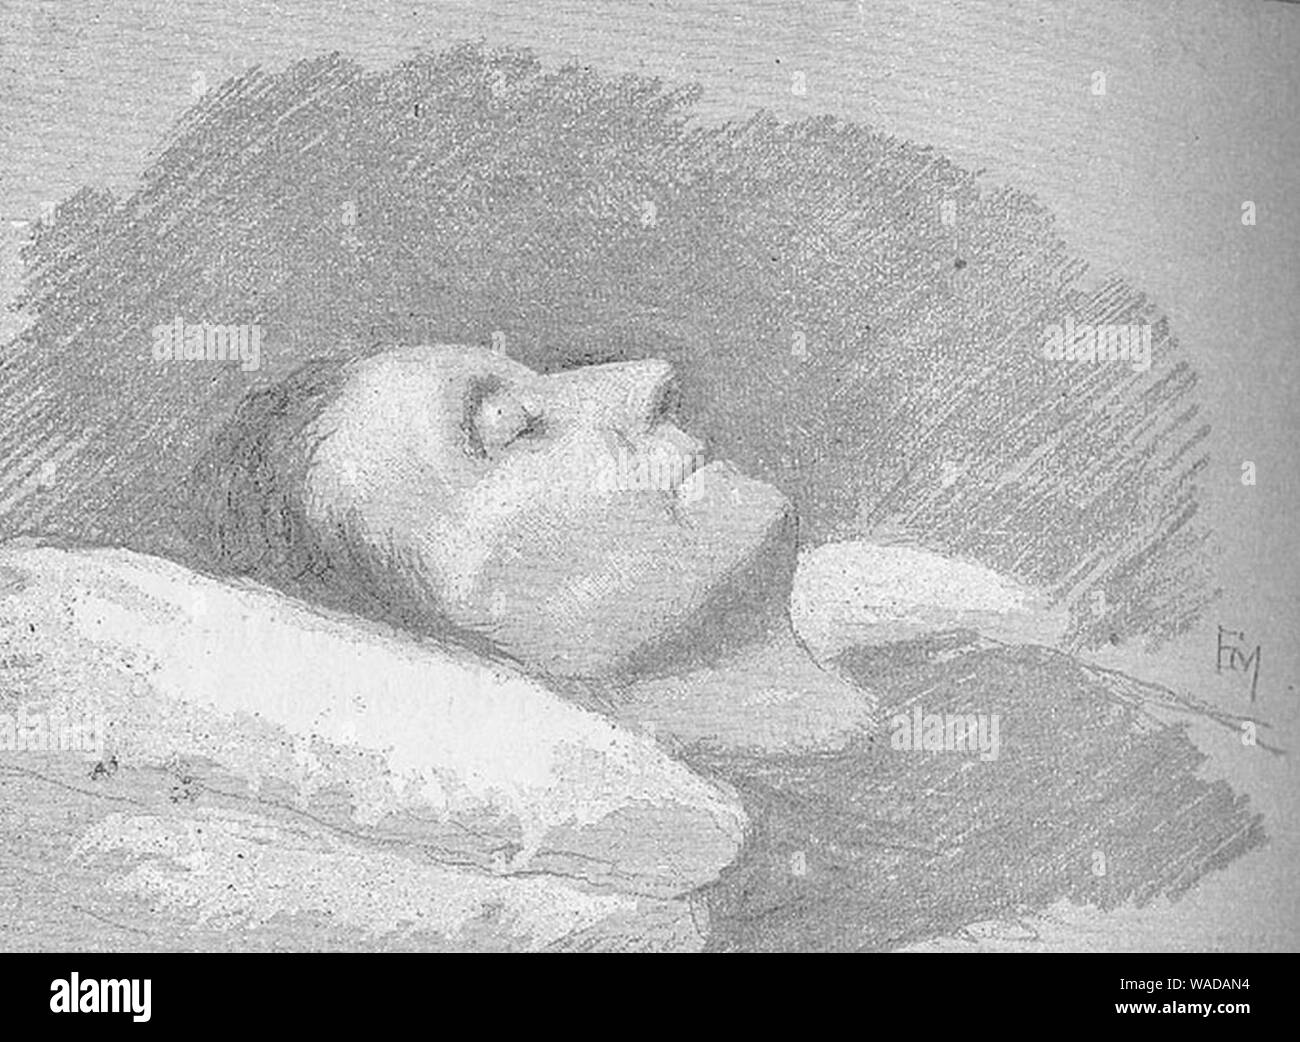 Doña Juana en el lecho de muerte. Ilustración de ‘La corte de Carlos IV‘ de Galdós. Stock Photo